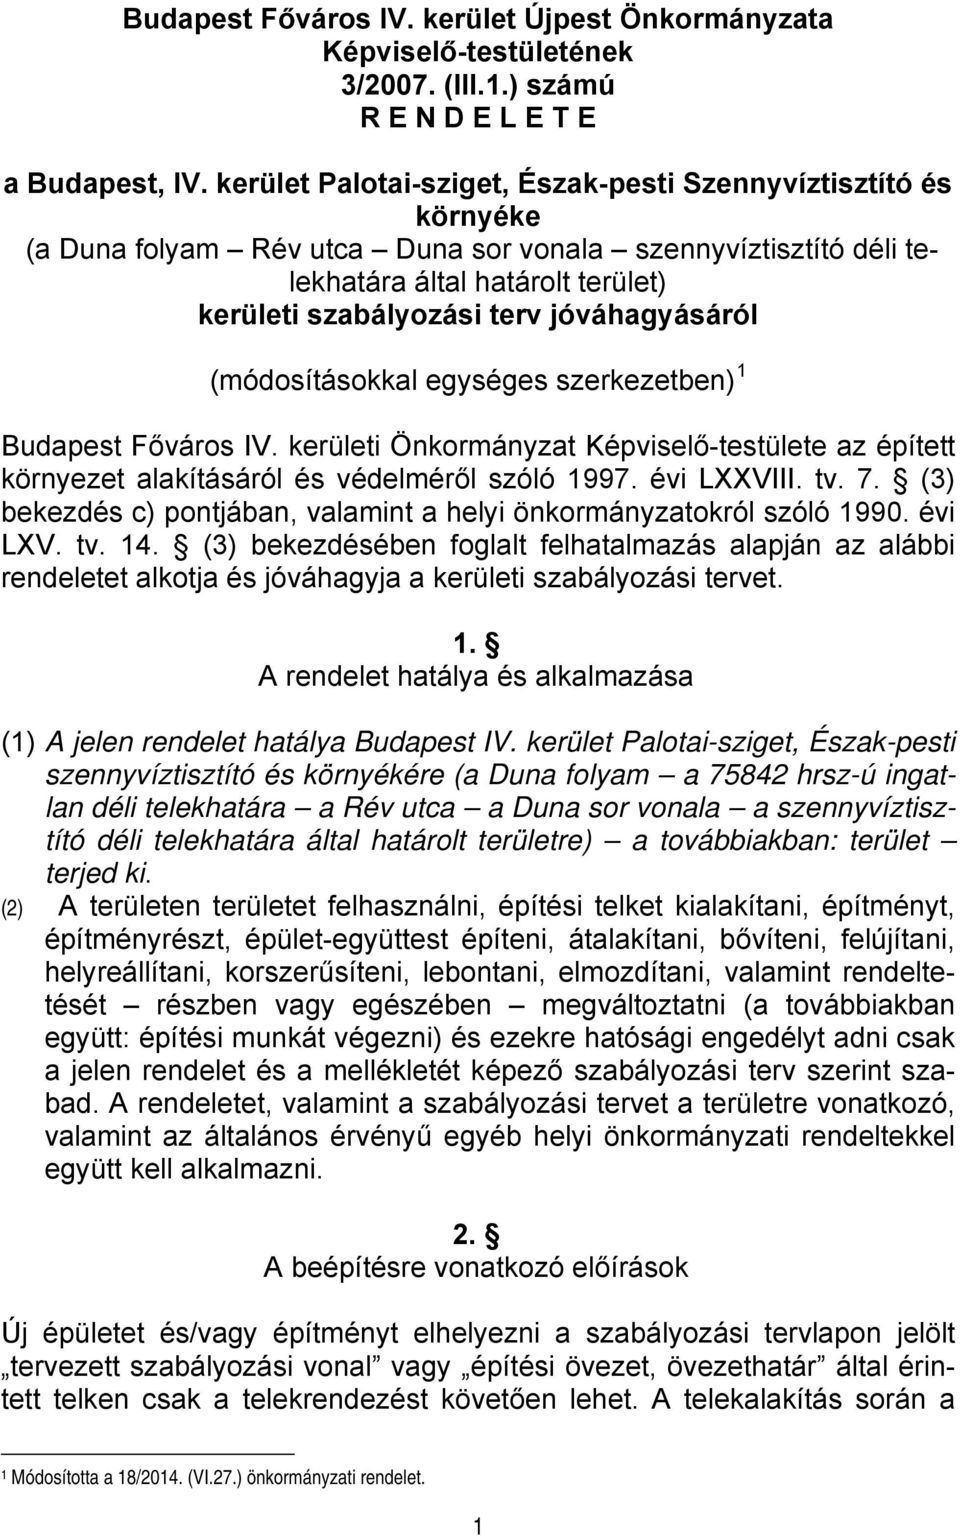 jóváhagyásáról (módosításokkal egységes szerkezetben) 1 Budapest Főváros IV. kerületi Önkormányzat Képviselő-testülete az épített környezet alakításáról és védelméről szóló 1997. évi LXXVIII. tv. 7.